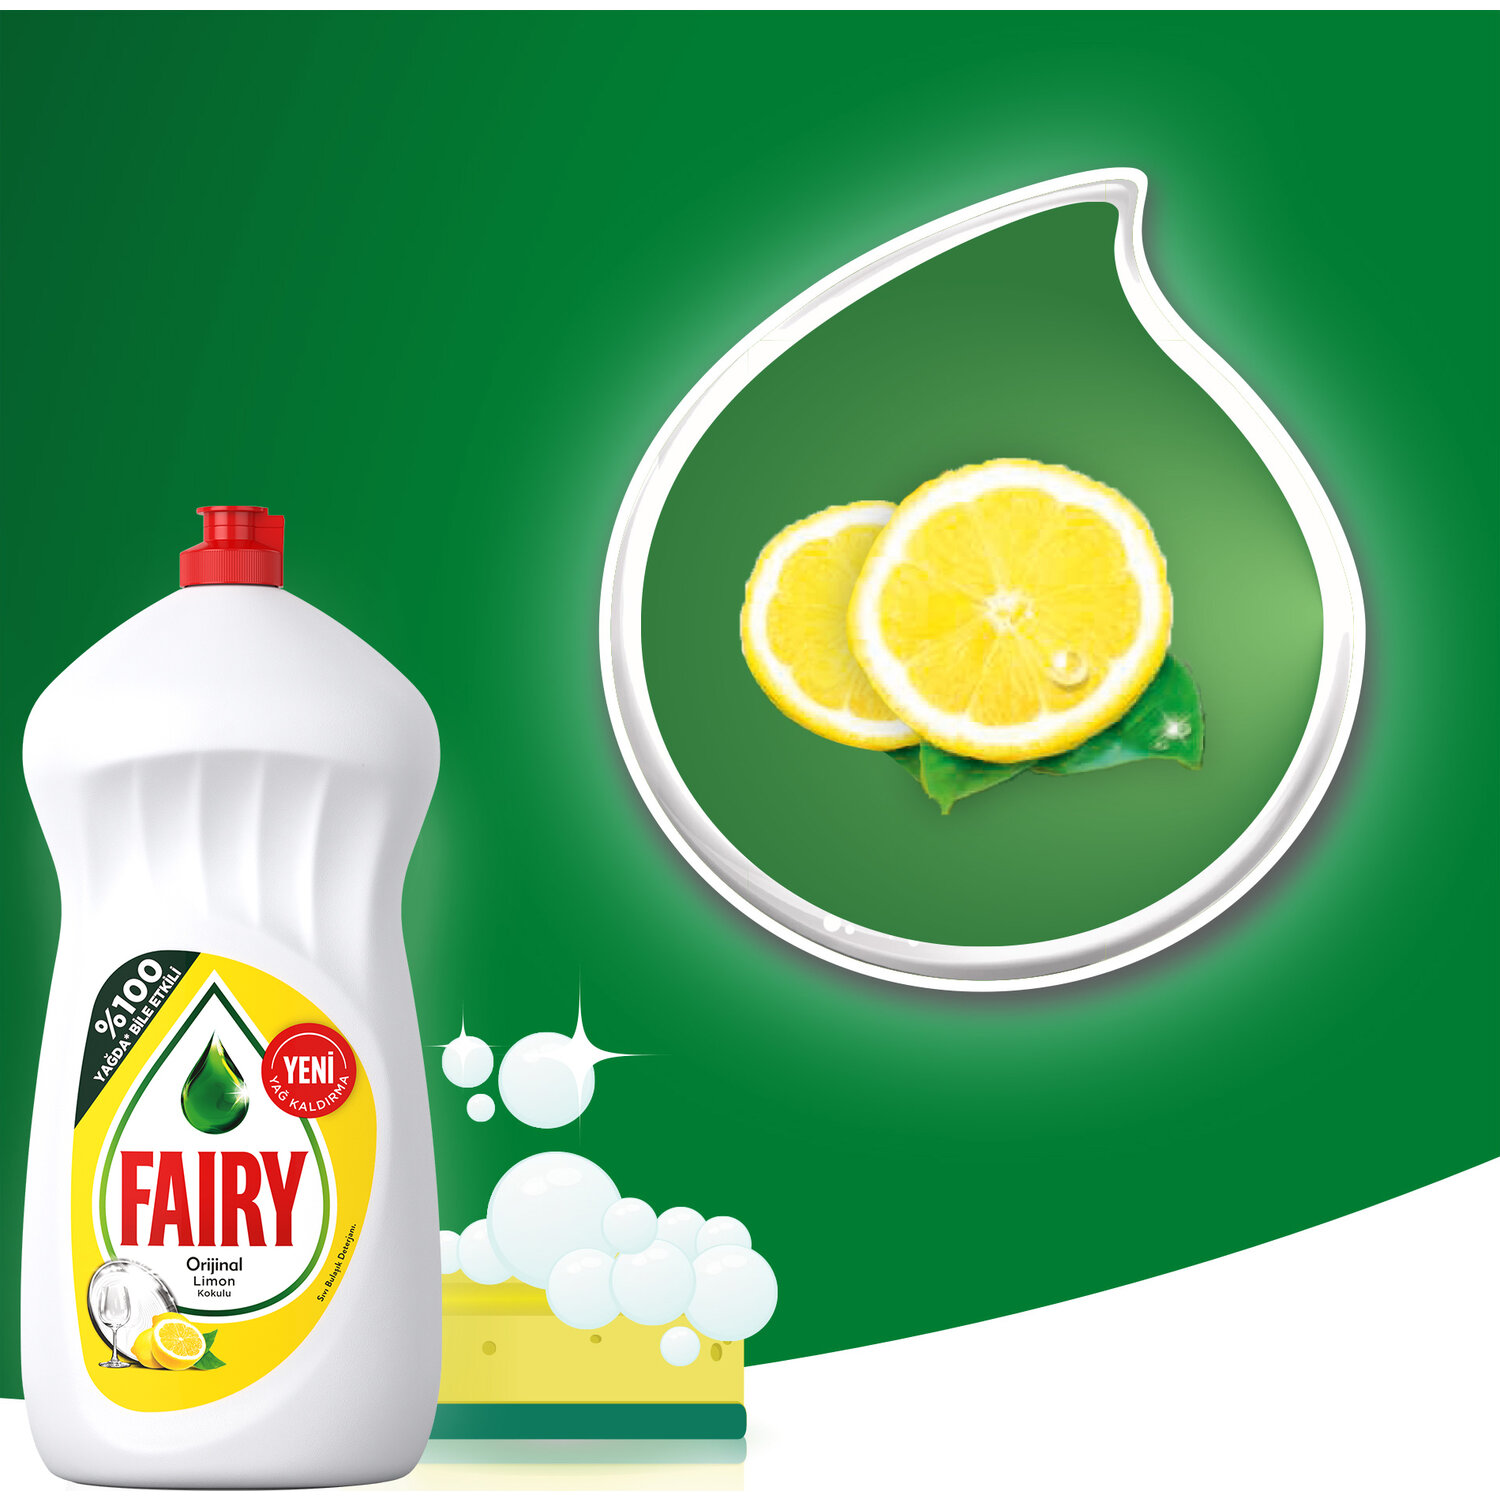 Средство для мытья посуды fairy сочный лимон. Фейри сочный лимон 1.35. Средство для мытья посуды "Fairy" "сочный лимон", 1.35л. Фейри 1350 мл. Фейри сочный лимон 1350.